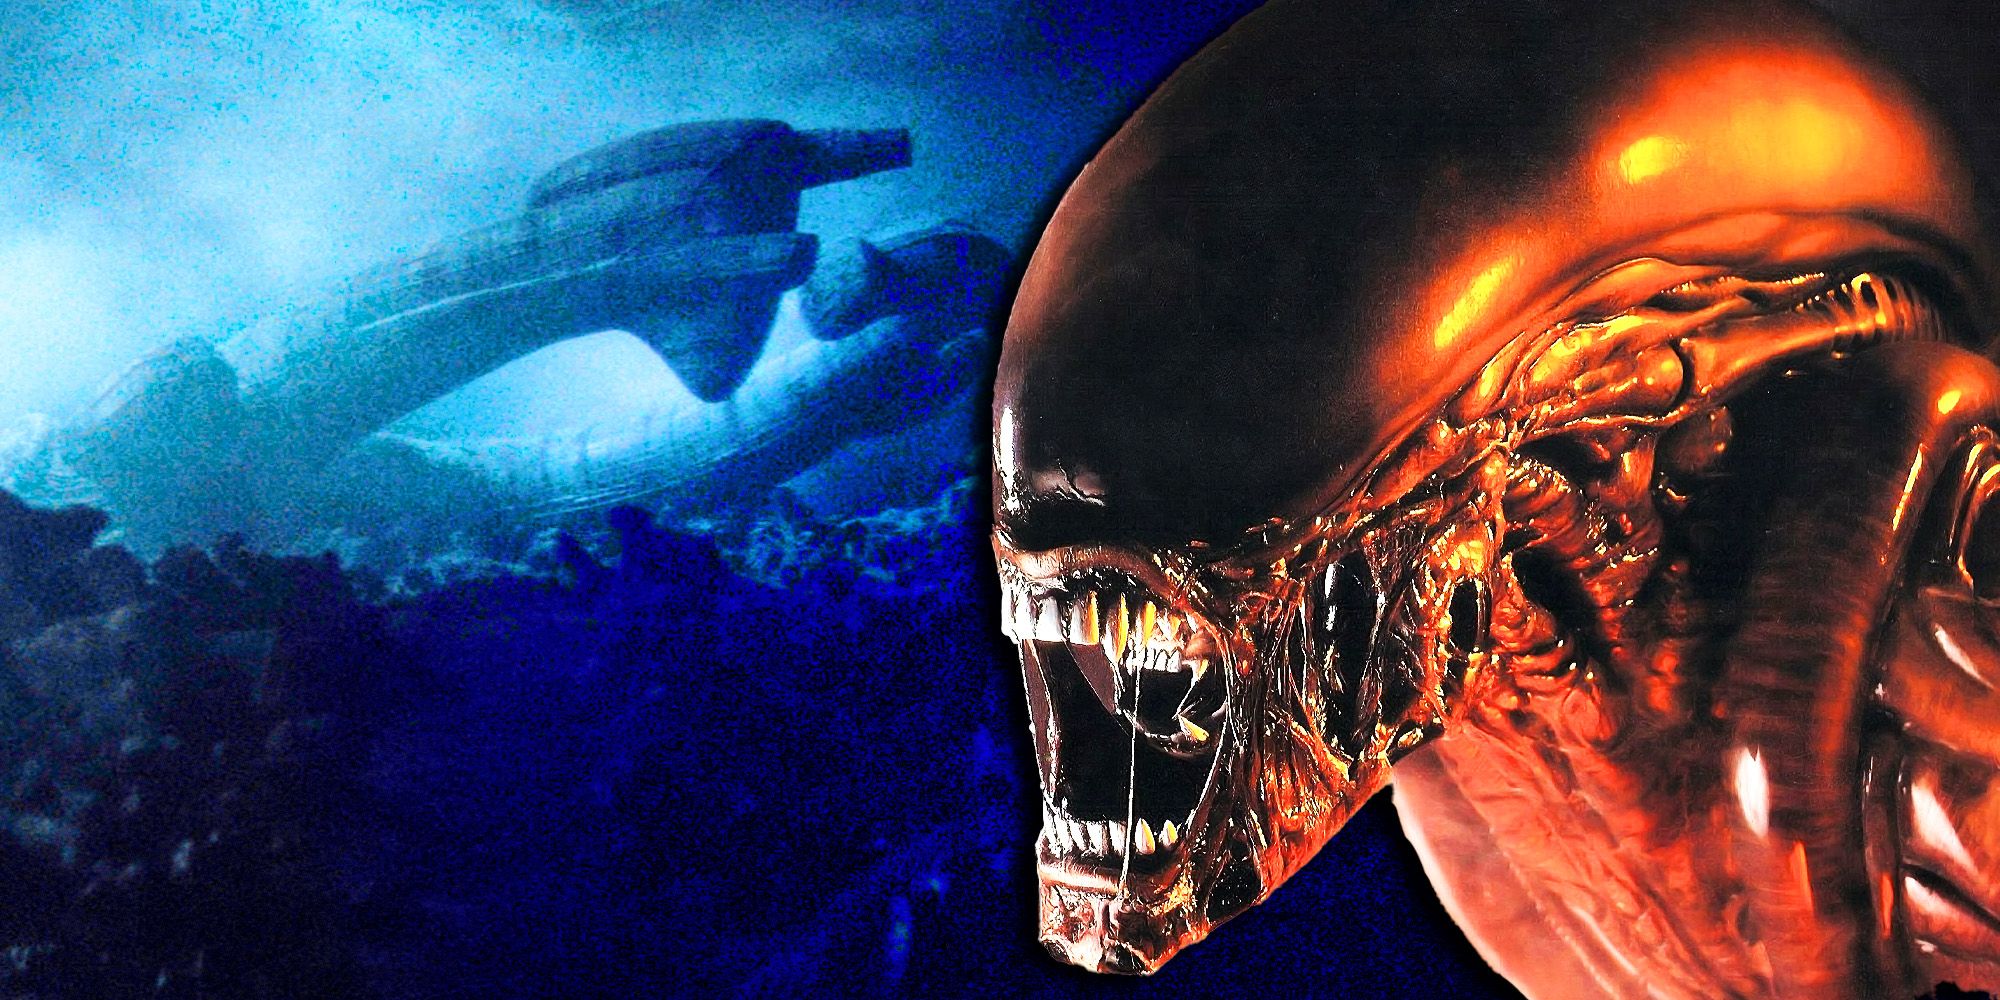 El próximo programa de televisión Alien está haciendo algo que la franquicia ha evitado durante 44 años